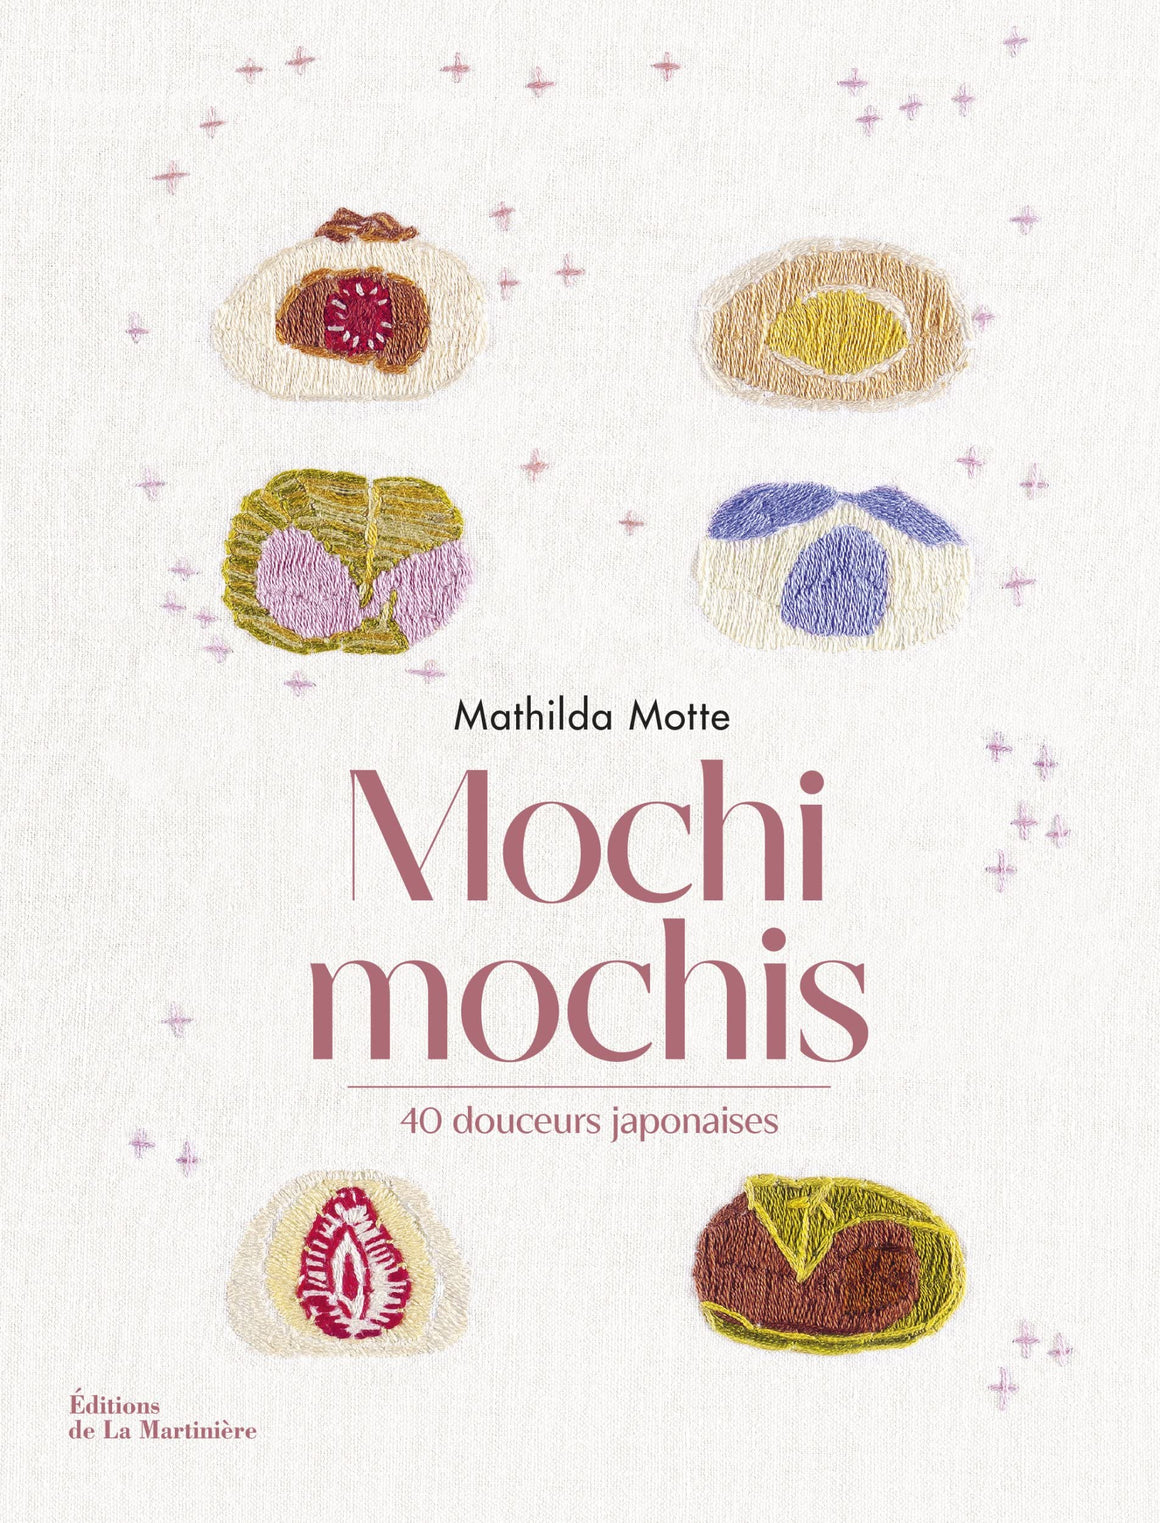 (*NEW ARRIVAL*) (Pastry - Japanese) Mathilda Motte. Mochi mochis: 40 douceurs japonaises.